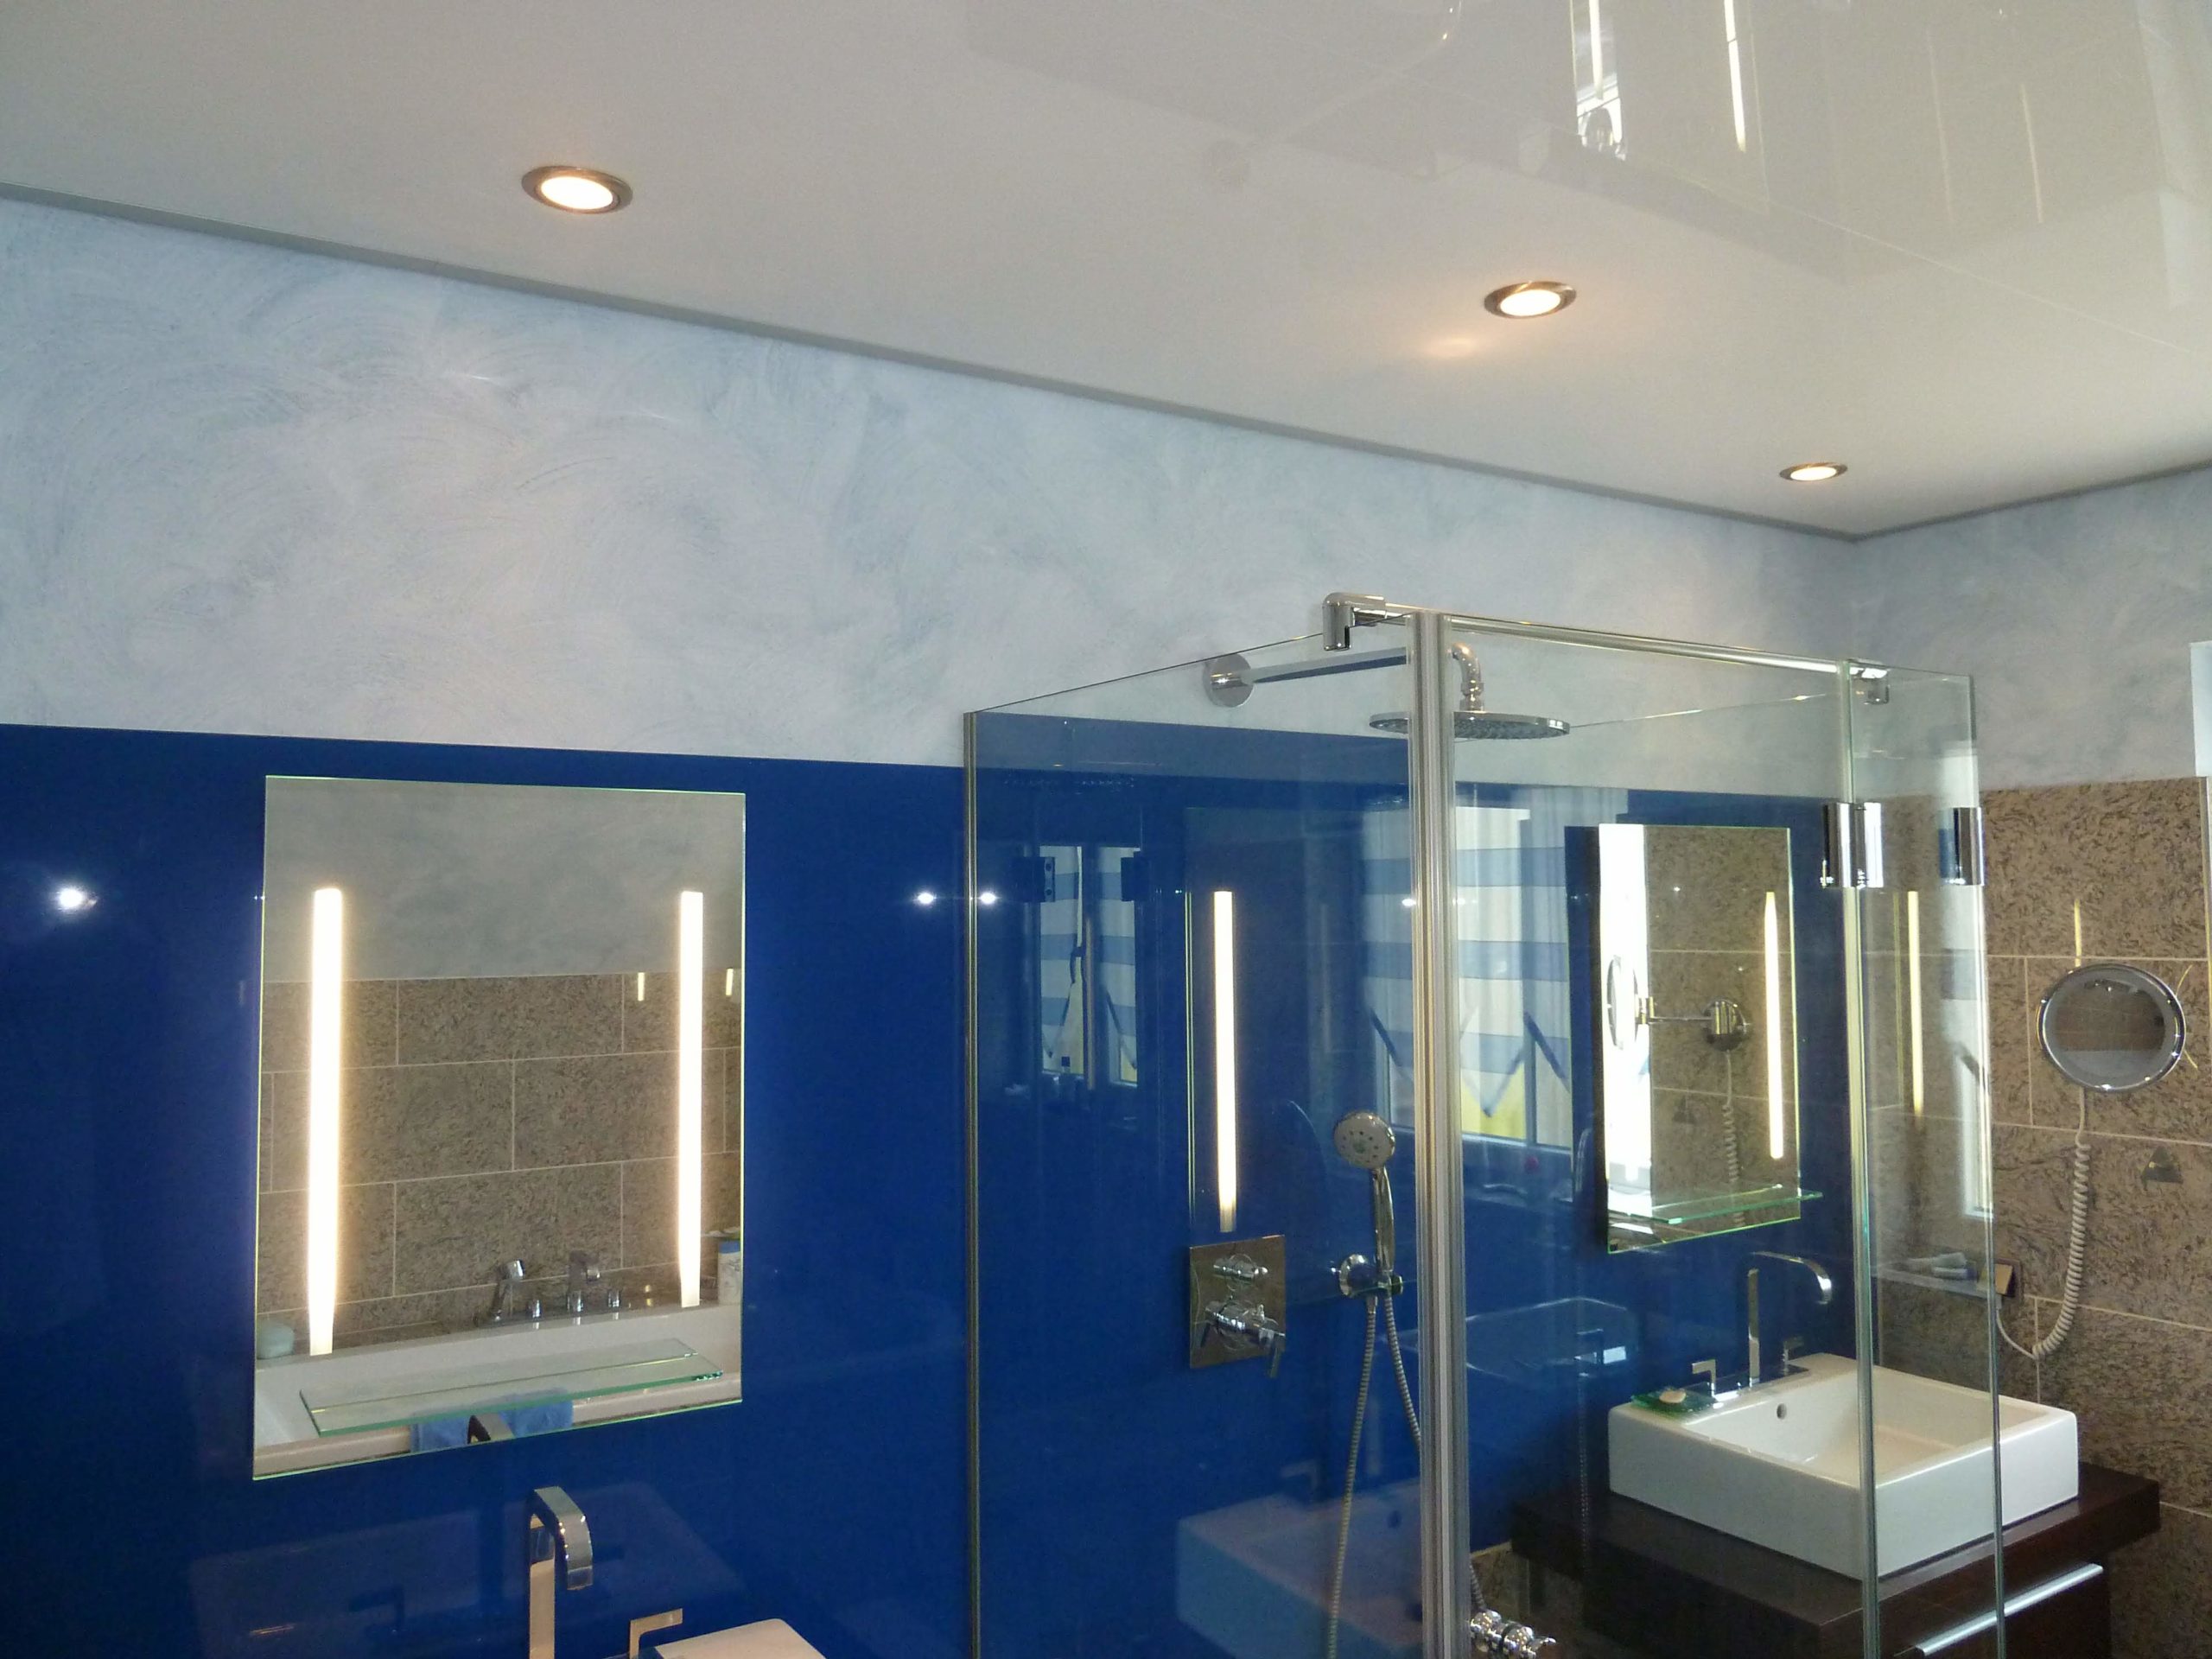 Hochwertiges Bad mit Spanndecke in weiß und blau